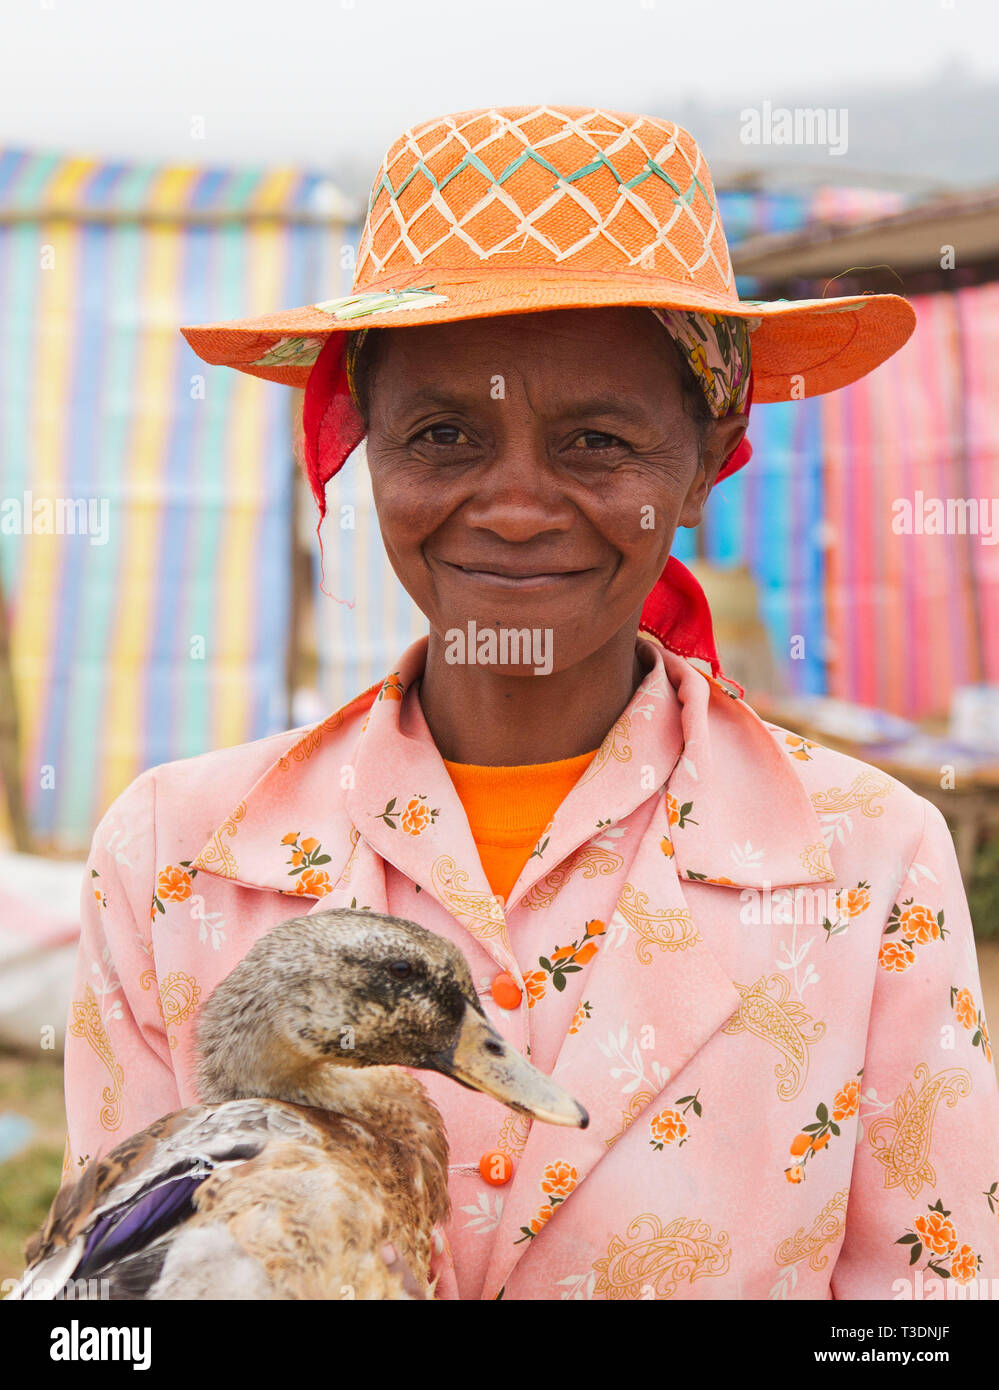 Portrait de femme malgache avec chapeau de paille traditionnel et tenant un canard à un marché de fermiers,montagne,Madagascar,Afrique Banque D'Images